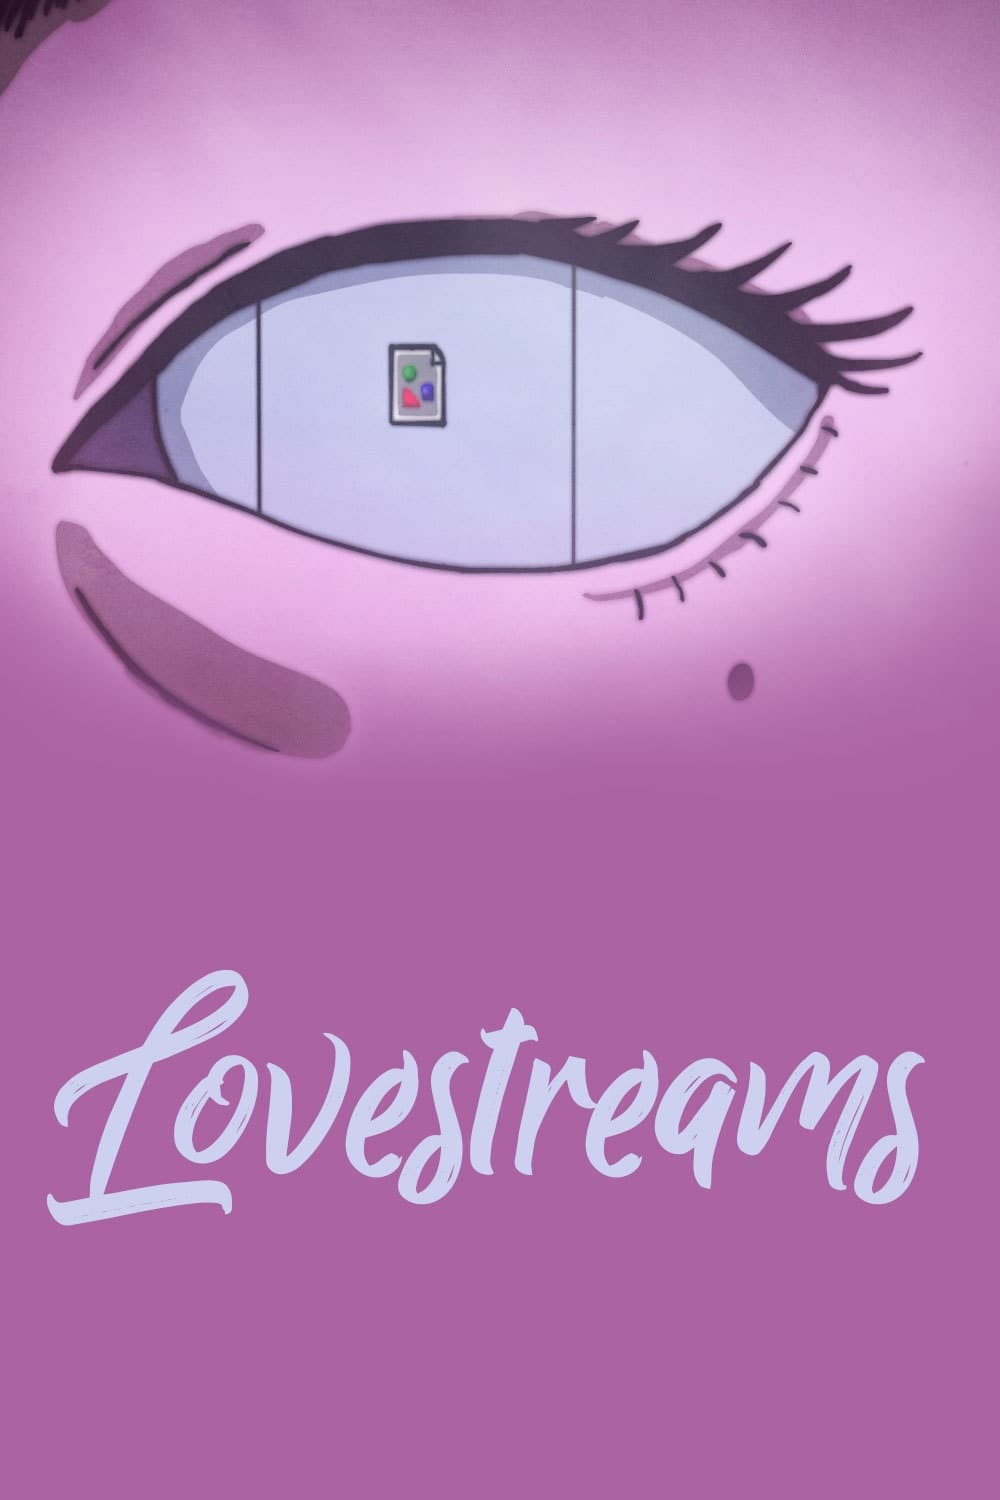 Lovestreams